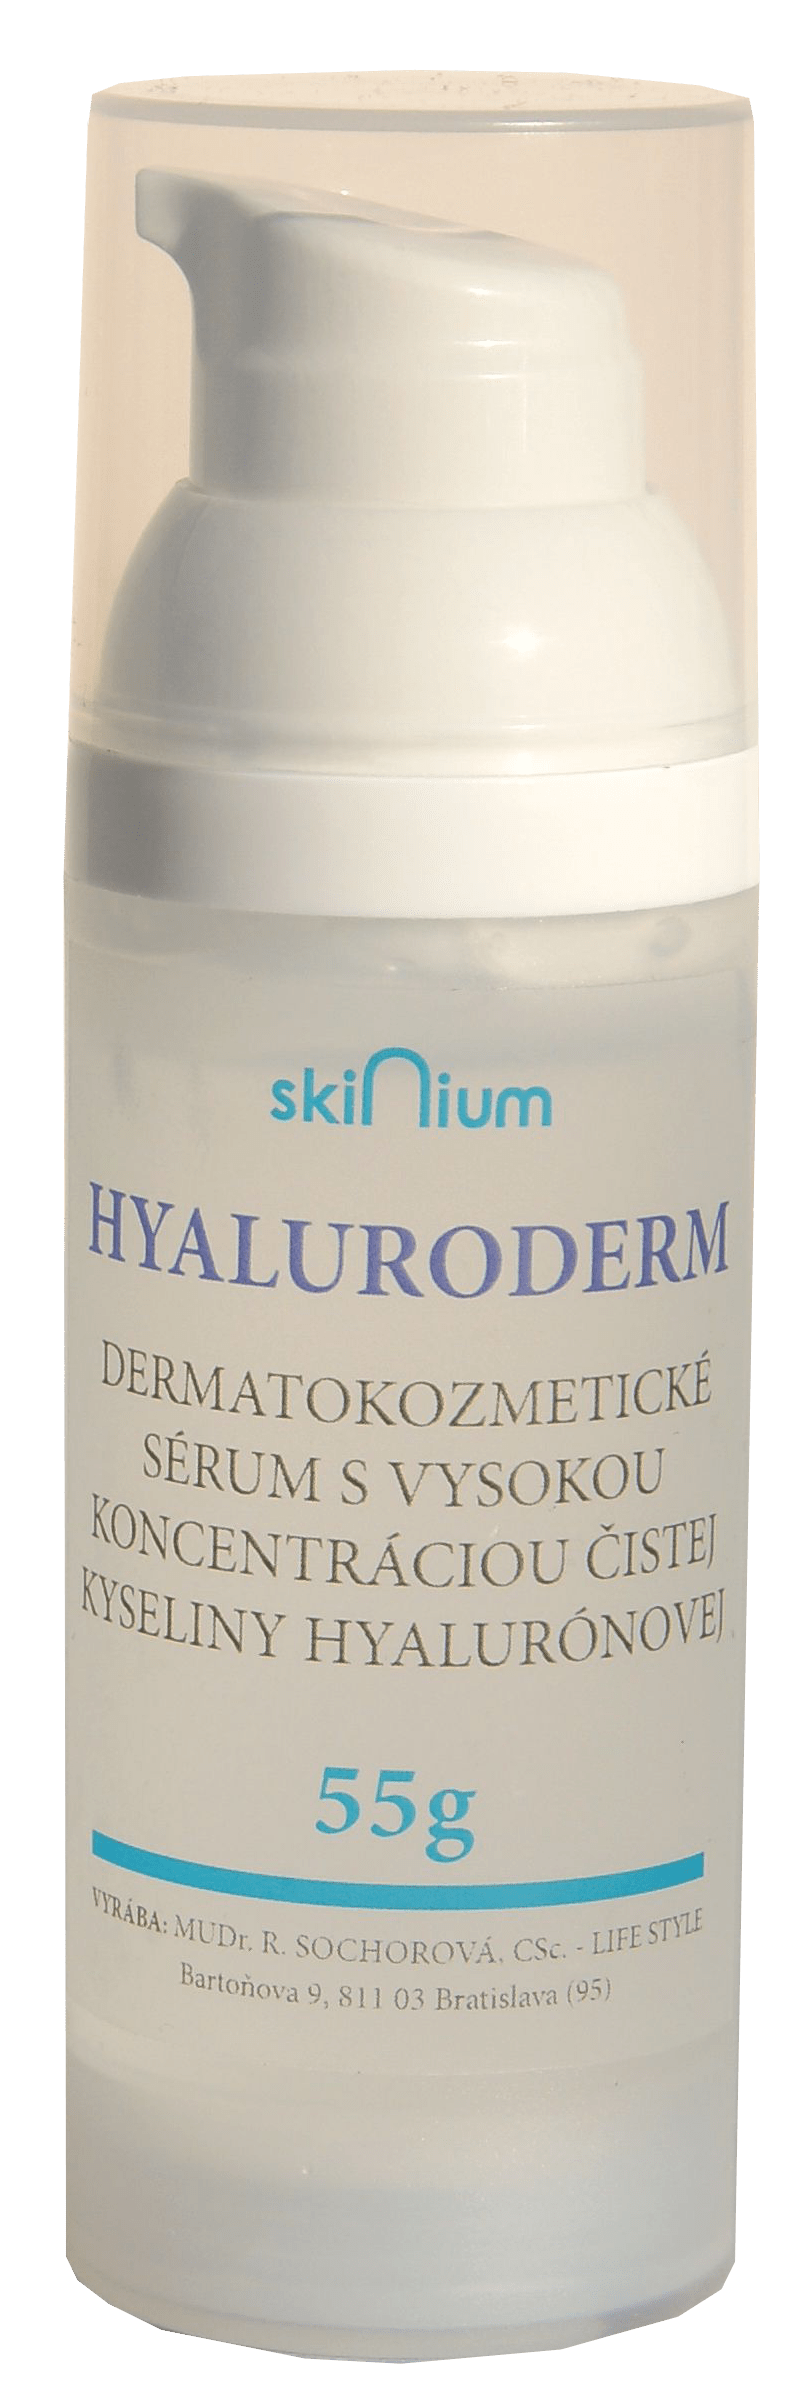 Predstavujeme kozmetiku Skinium vyrábanú na Slovensku